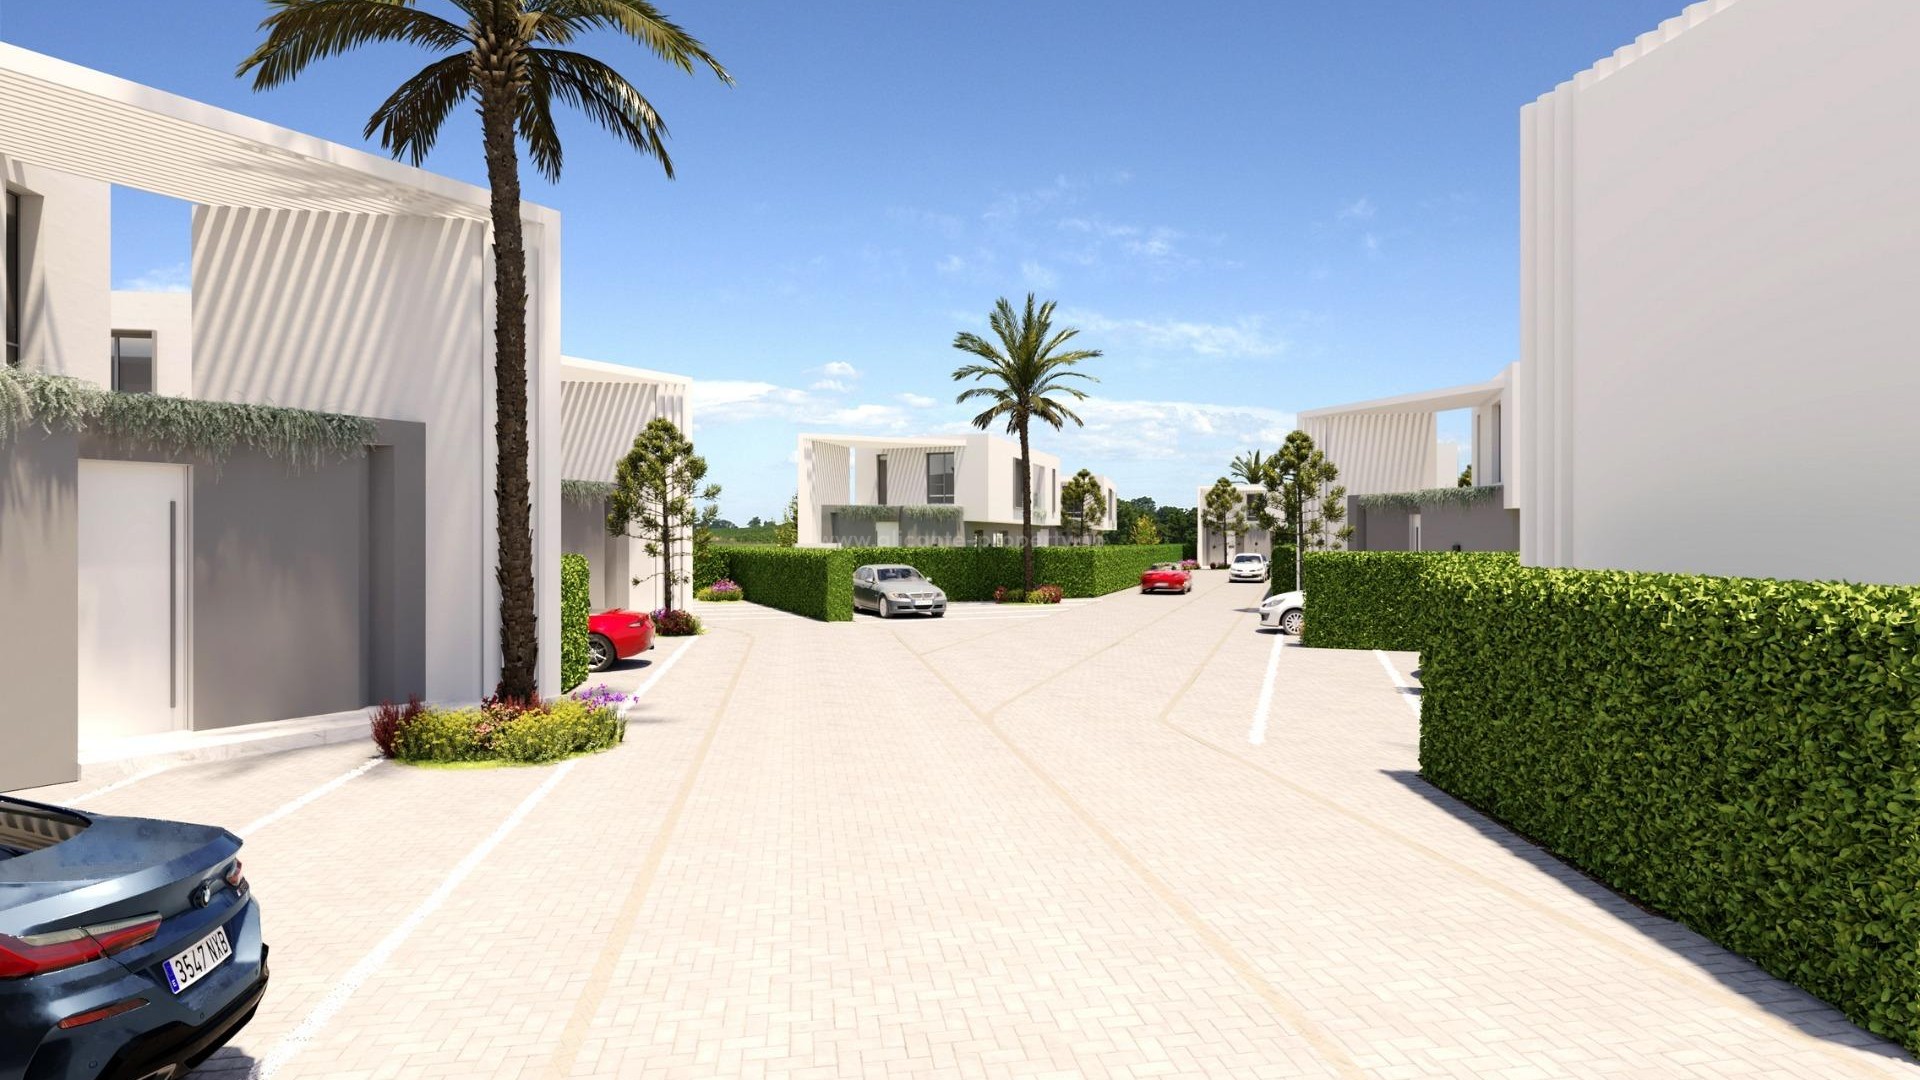 Villaer i San Juan de Alicante. Valg mellom 3 modeller av svært modern standard. Anlegget består av 21 uavhengige og private villaer m/svømmebasseng.